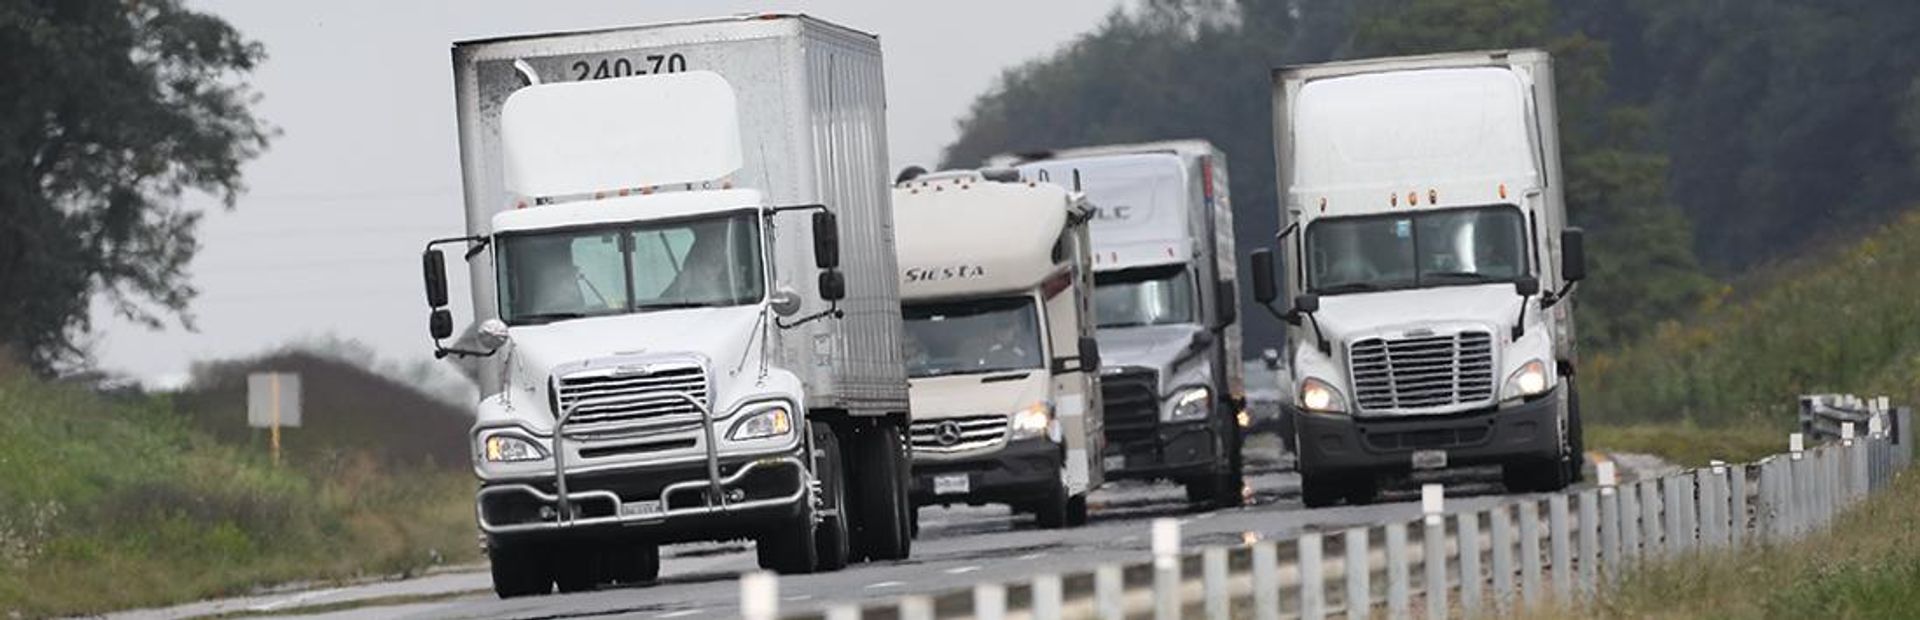 Truck restrictions | Virginia Department of Transportation